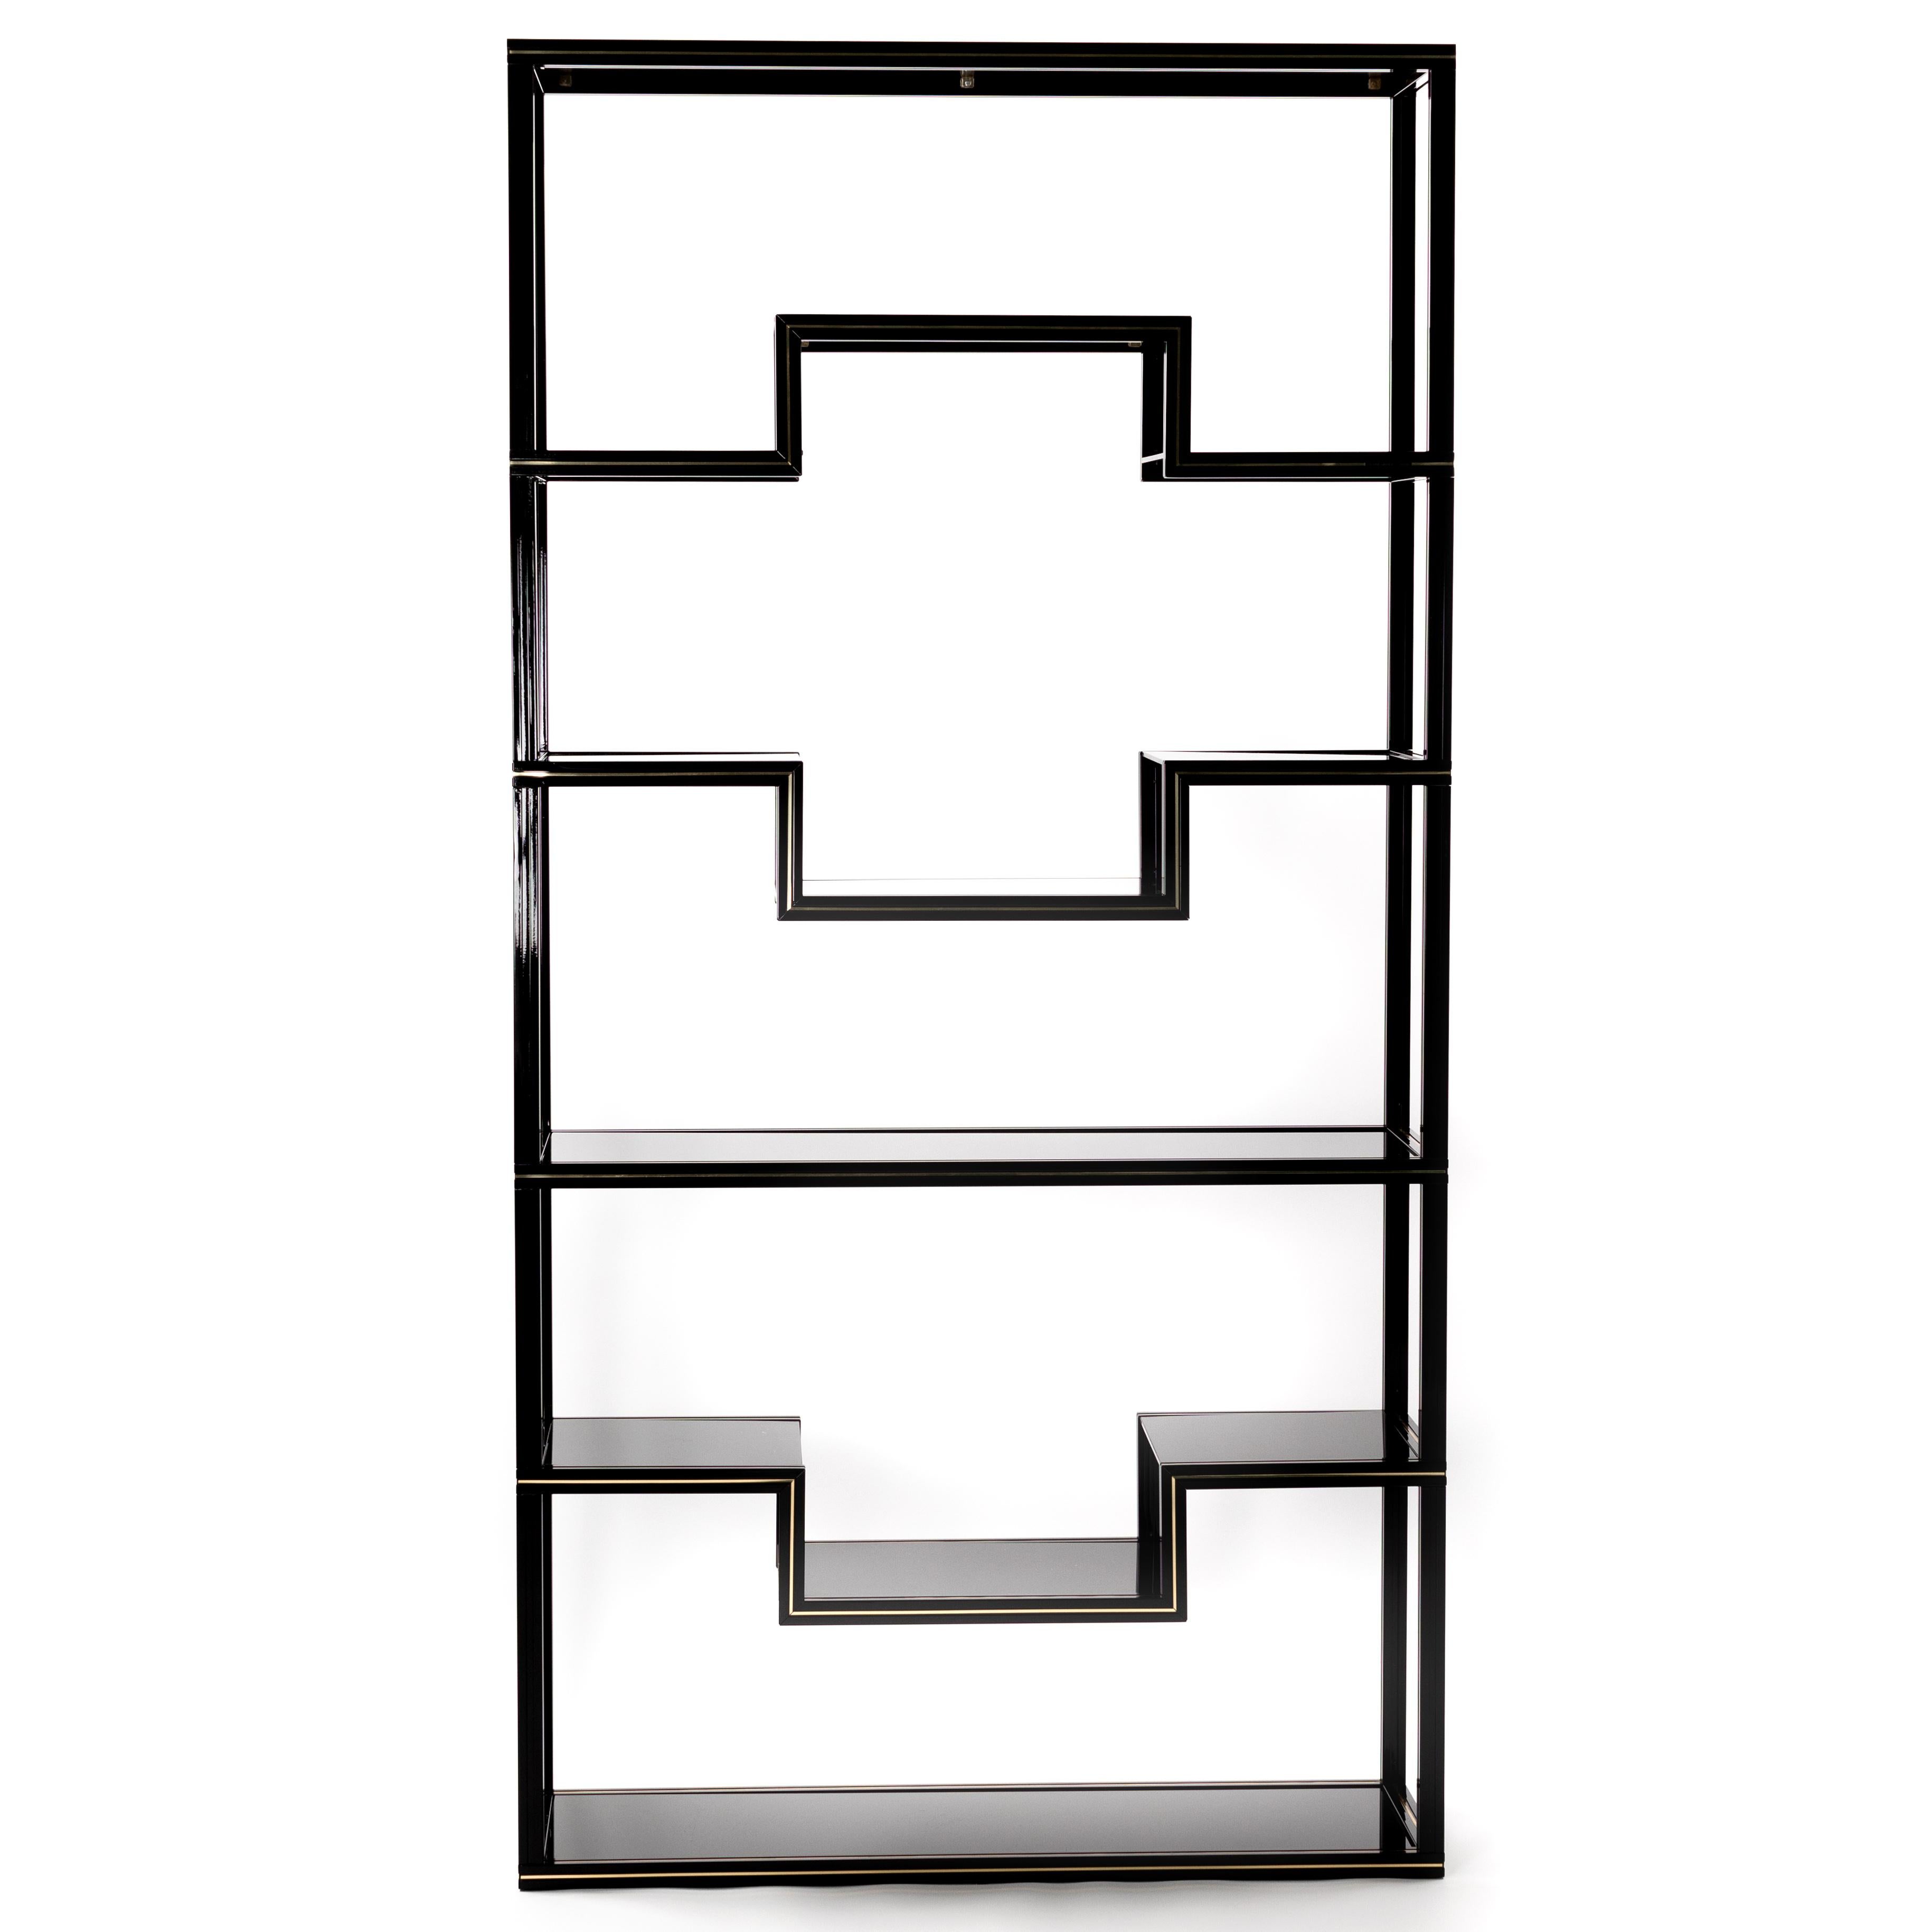 Extravagantes étagères Pierre Vandel en aluminium laqué noir avec des détails en laiton et des étagères en verre noir. 
Étiqueté - Pierre Vandel Paris - Circa fin des années 1970.
Les lignes épurées de cette étagère seraient parfaites pour exposer